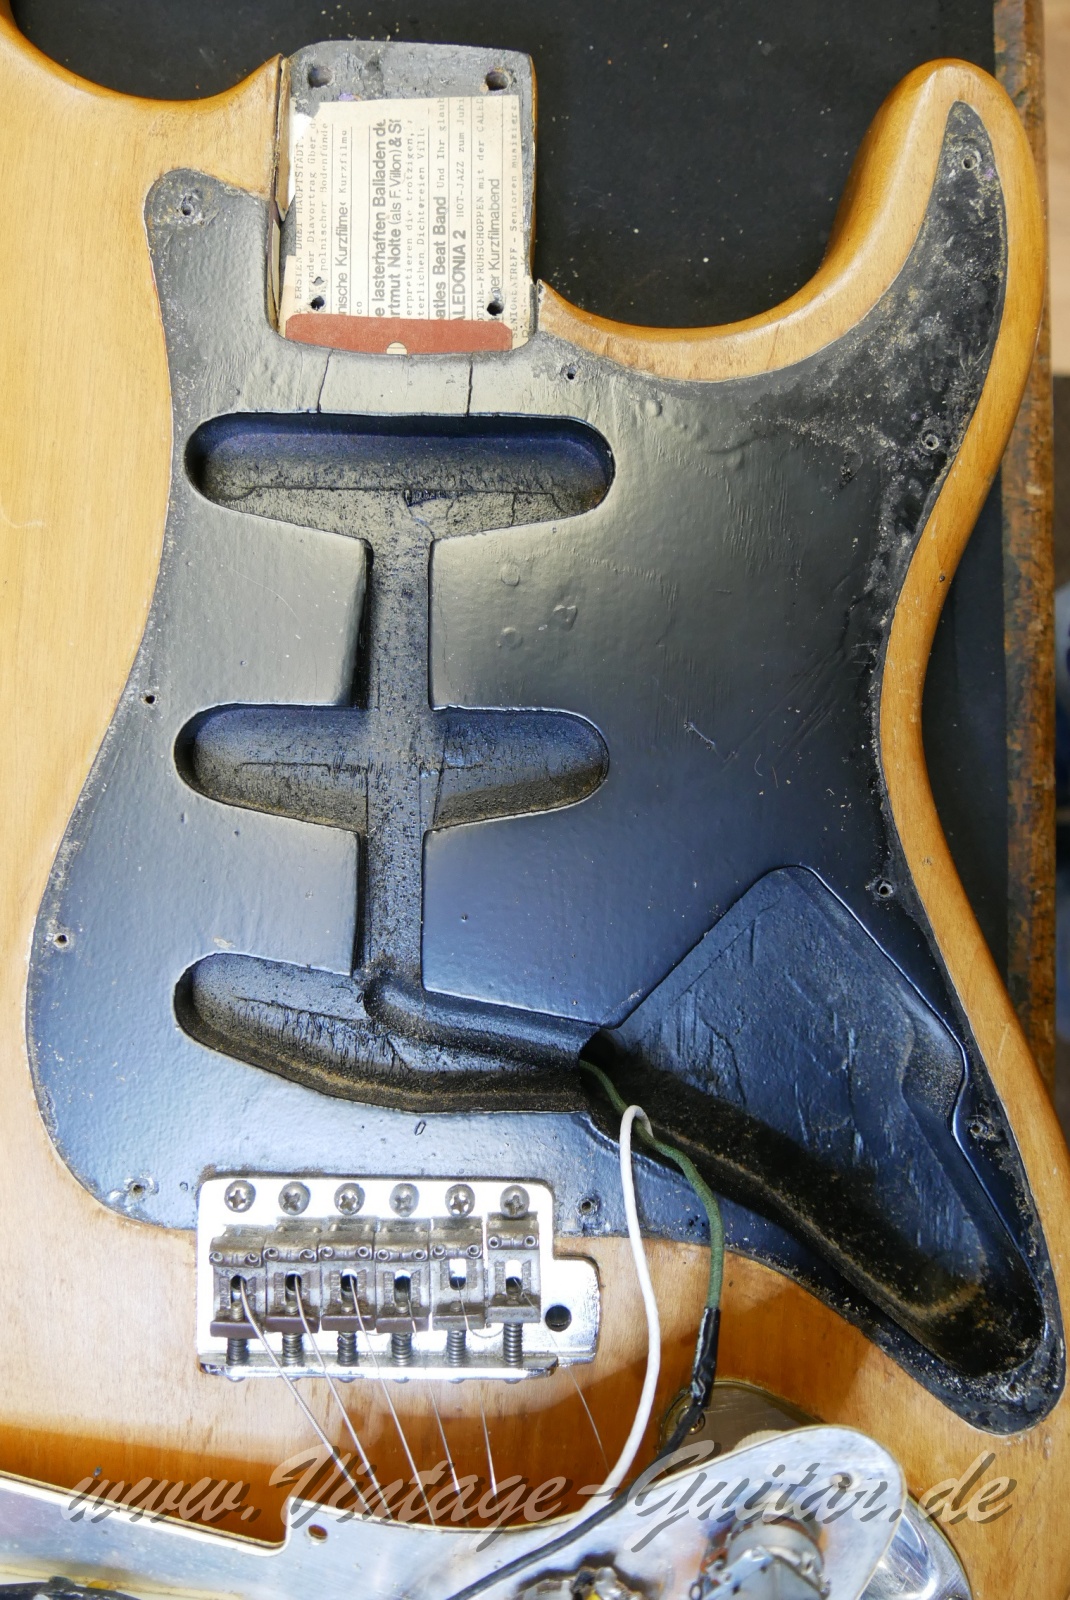 Fender_Stratocaster_body_stripped_1966-019.JPG